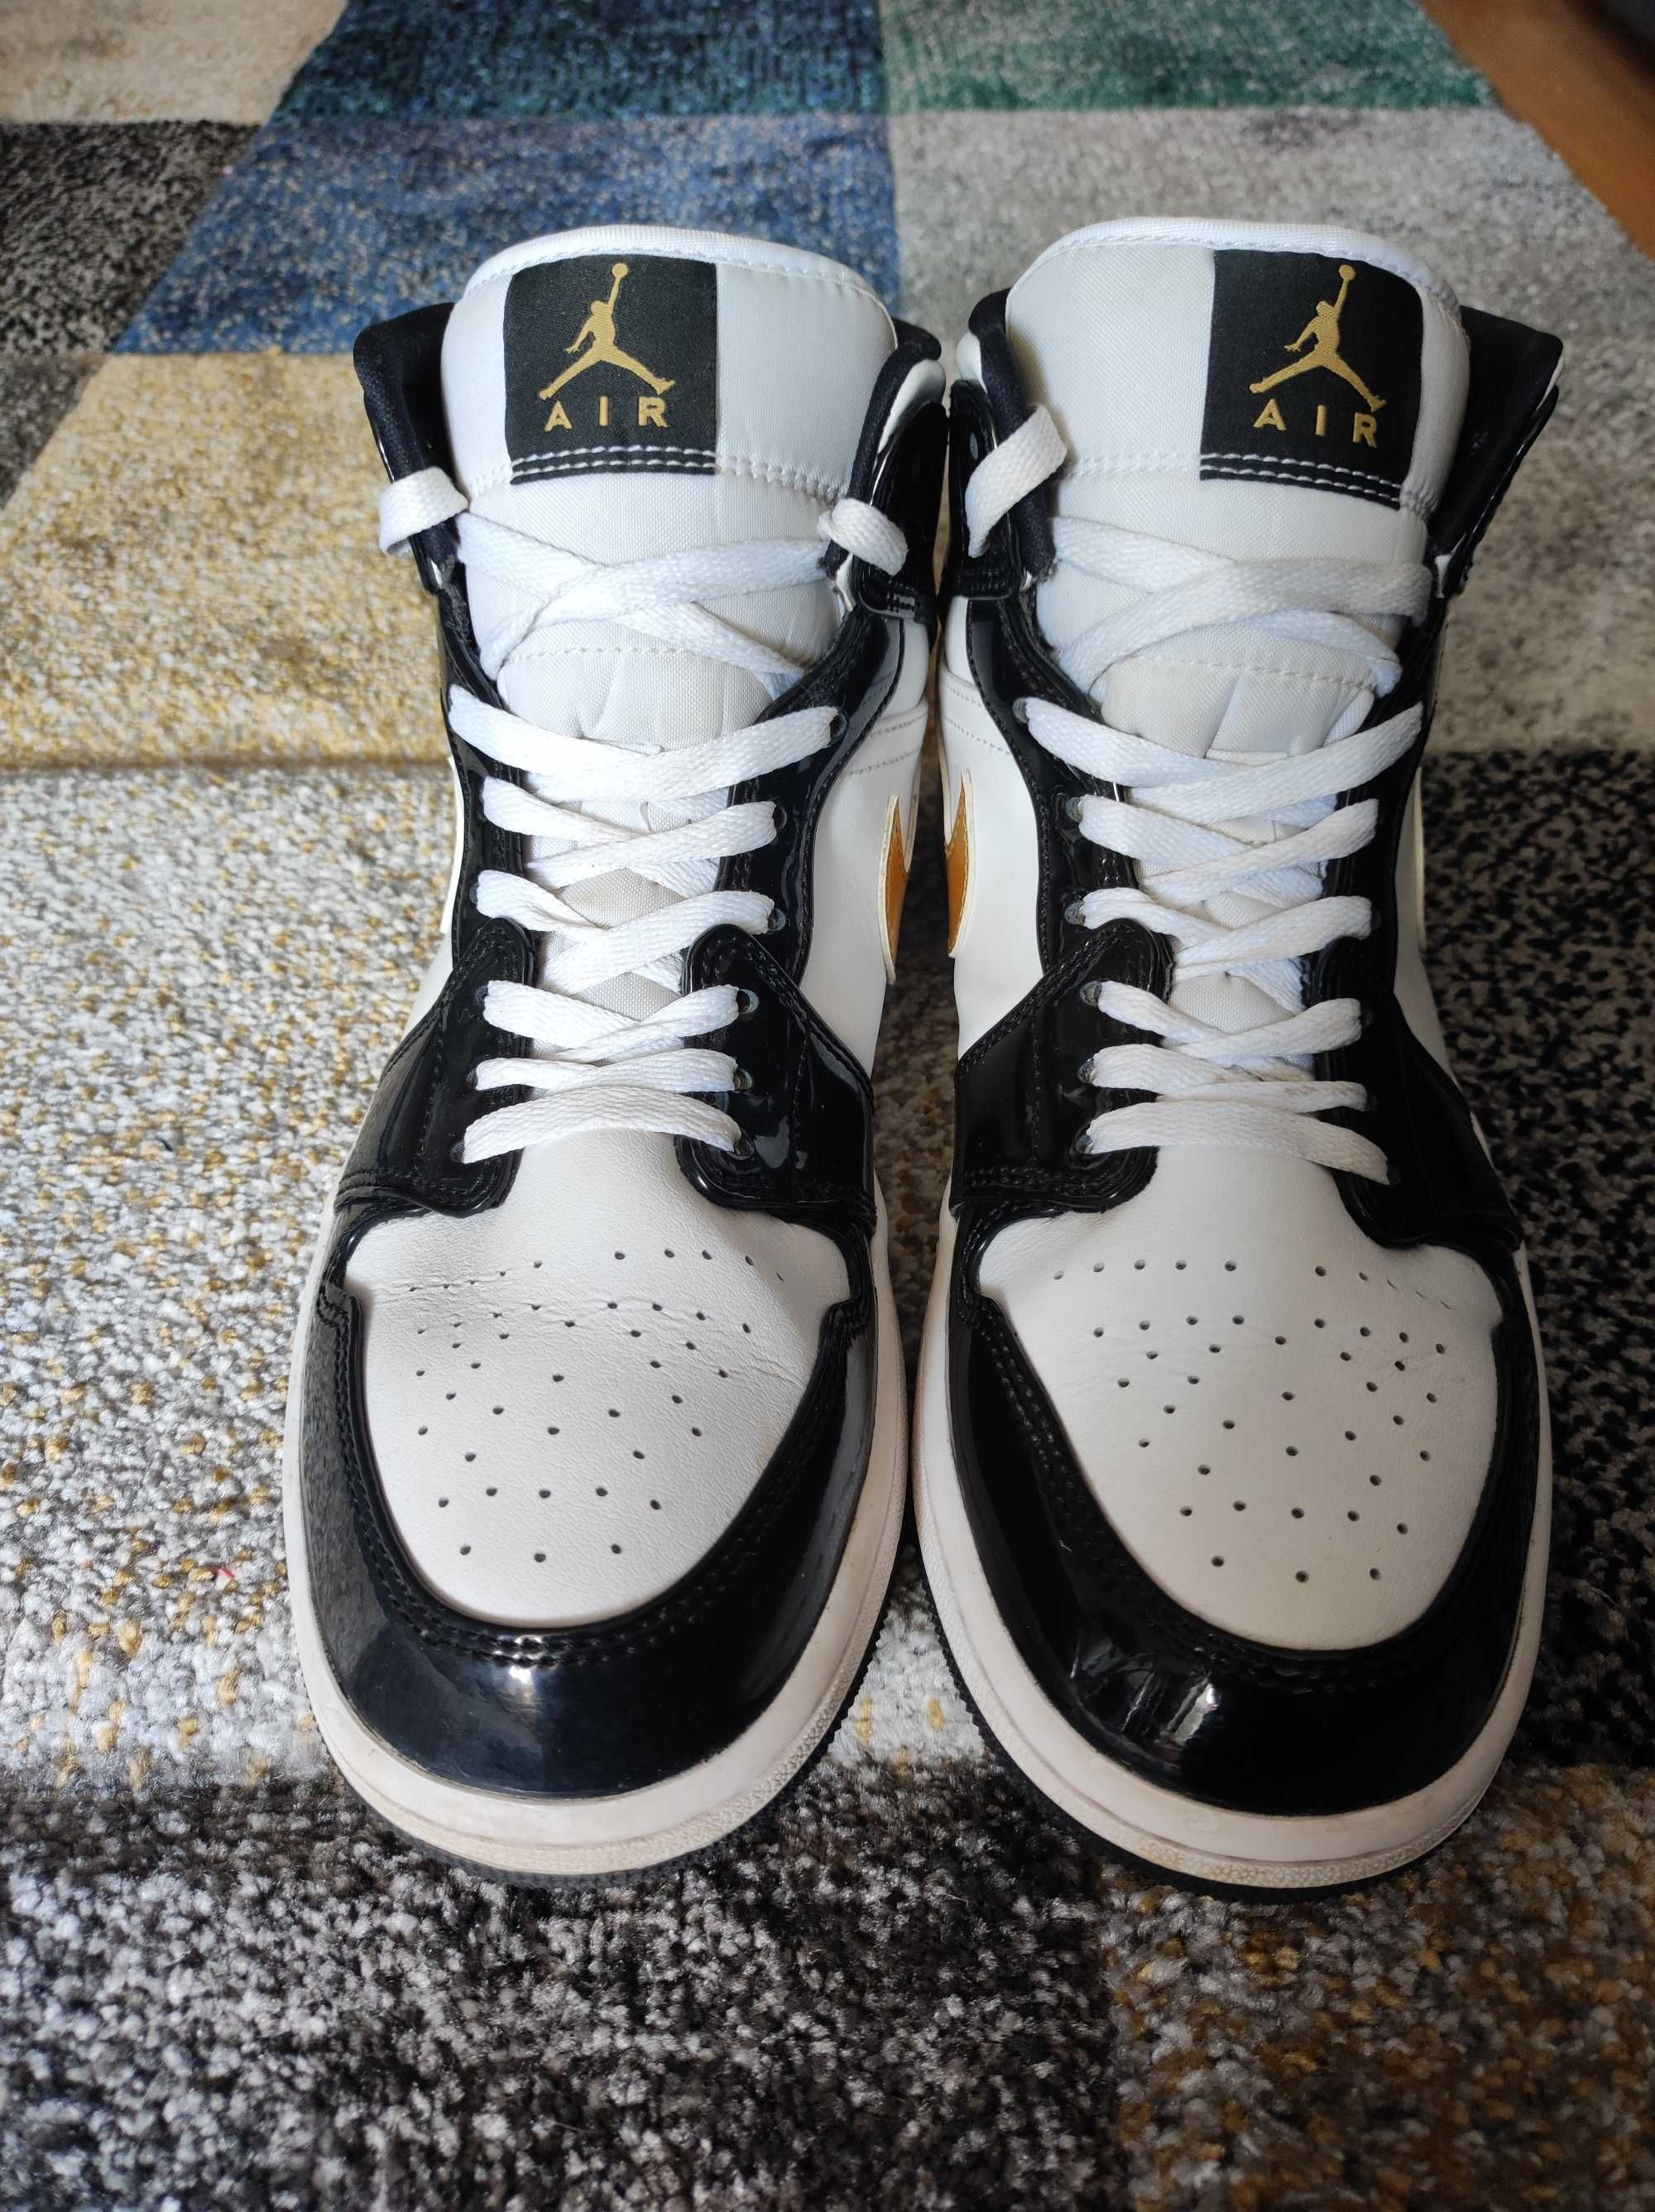 Nike Air Jordan buty do koszykówki rozm. 43